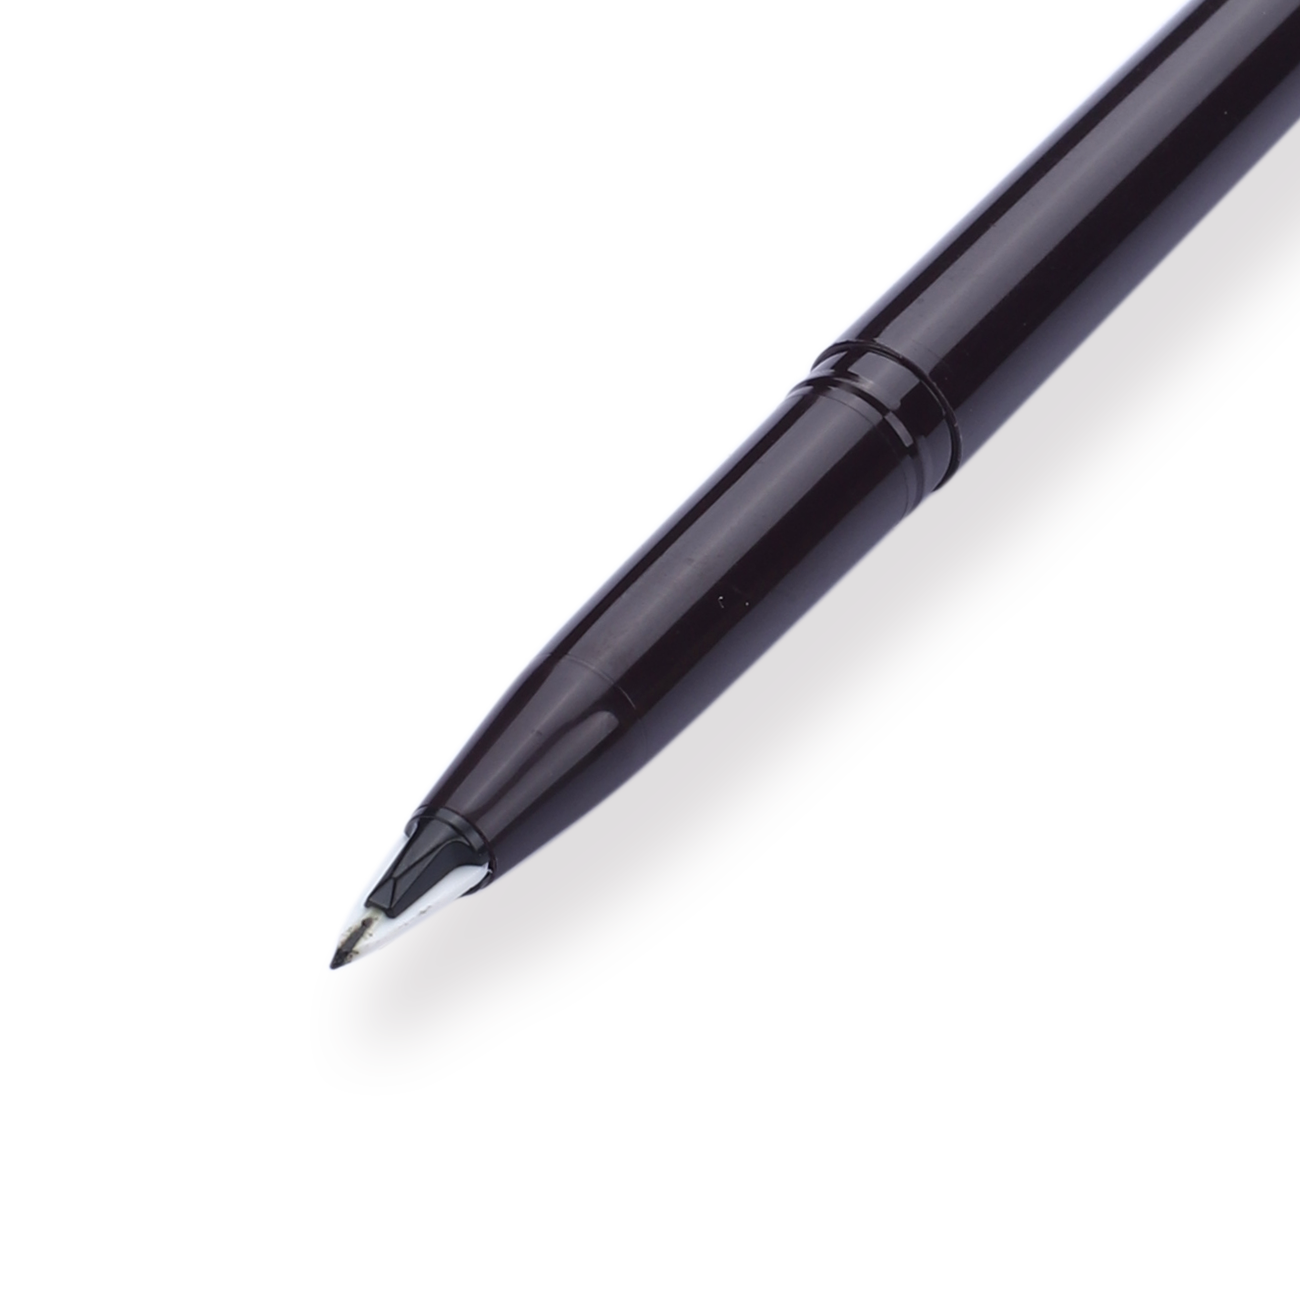 Pentel Stylo Sketch Pen - 0.5 mm - Black